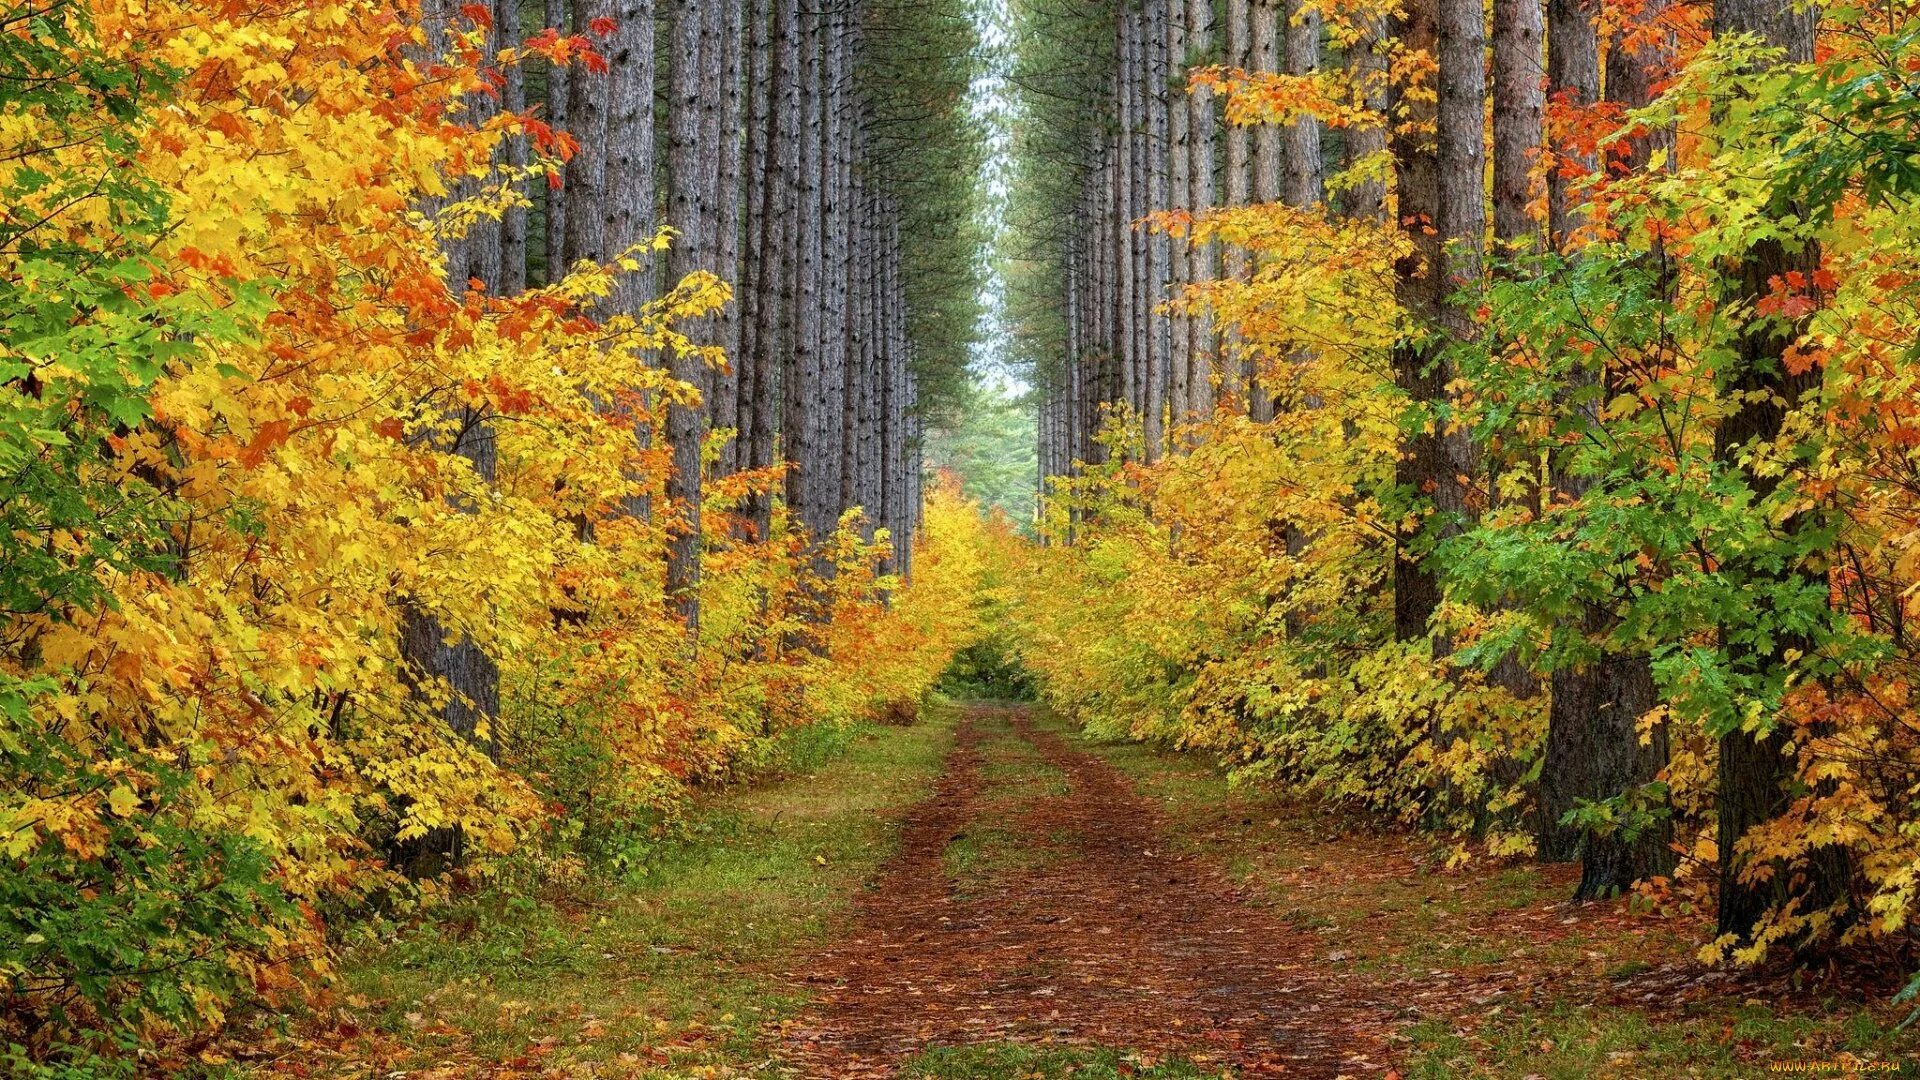 Может ли вас взволновать красота осеннего леса. Лес словно Терем расписной лиловый золотой багряный. Осенний лес. Осень в лесу. Лес осенью.